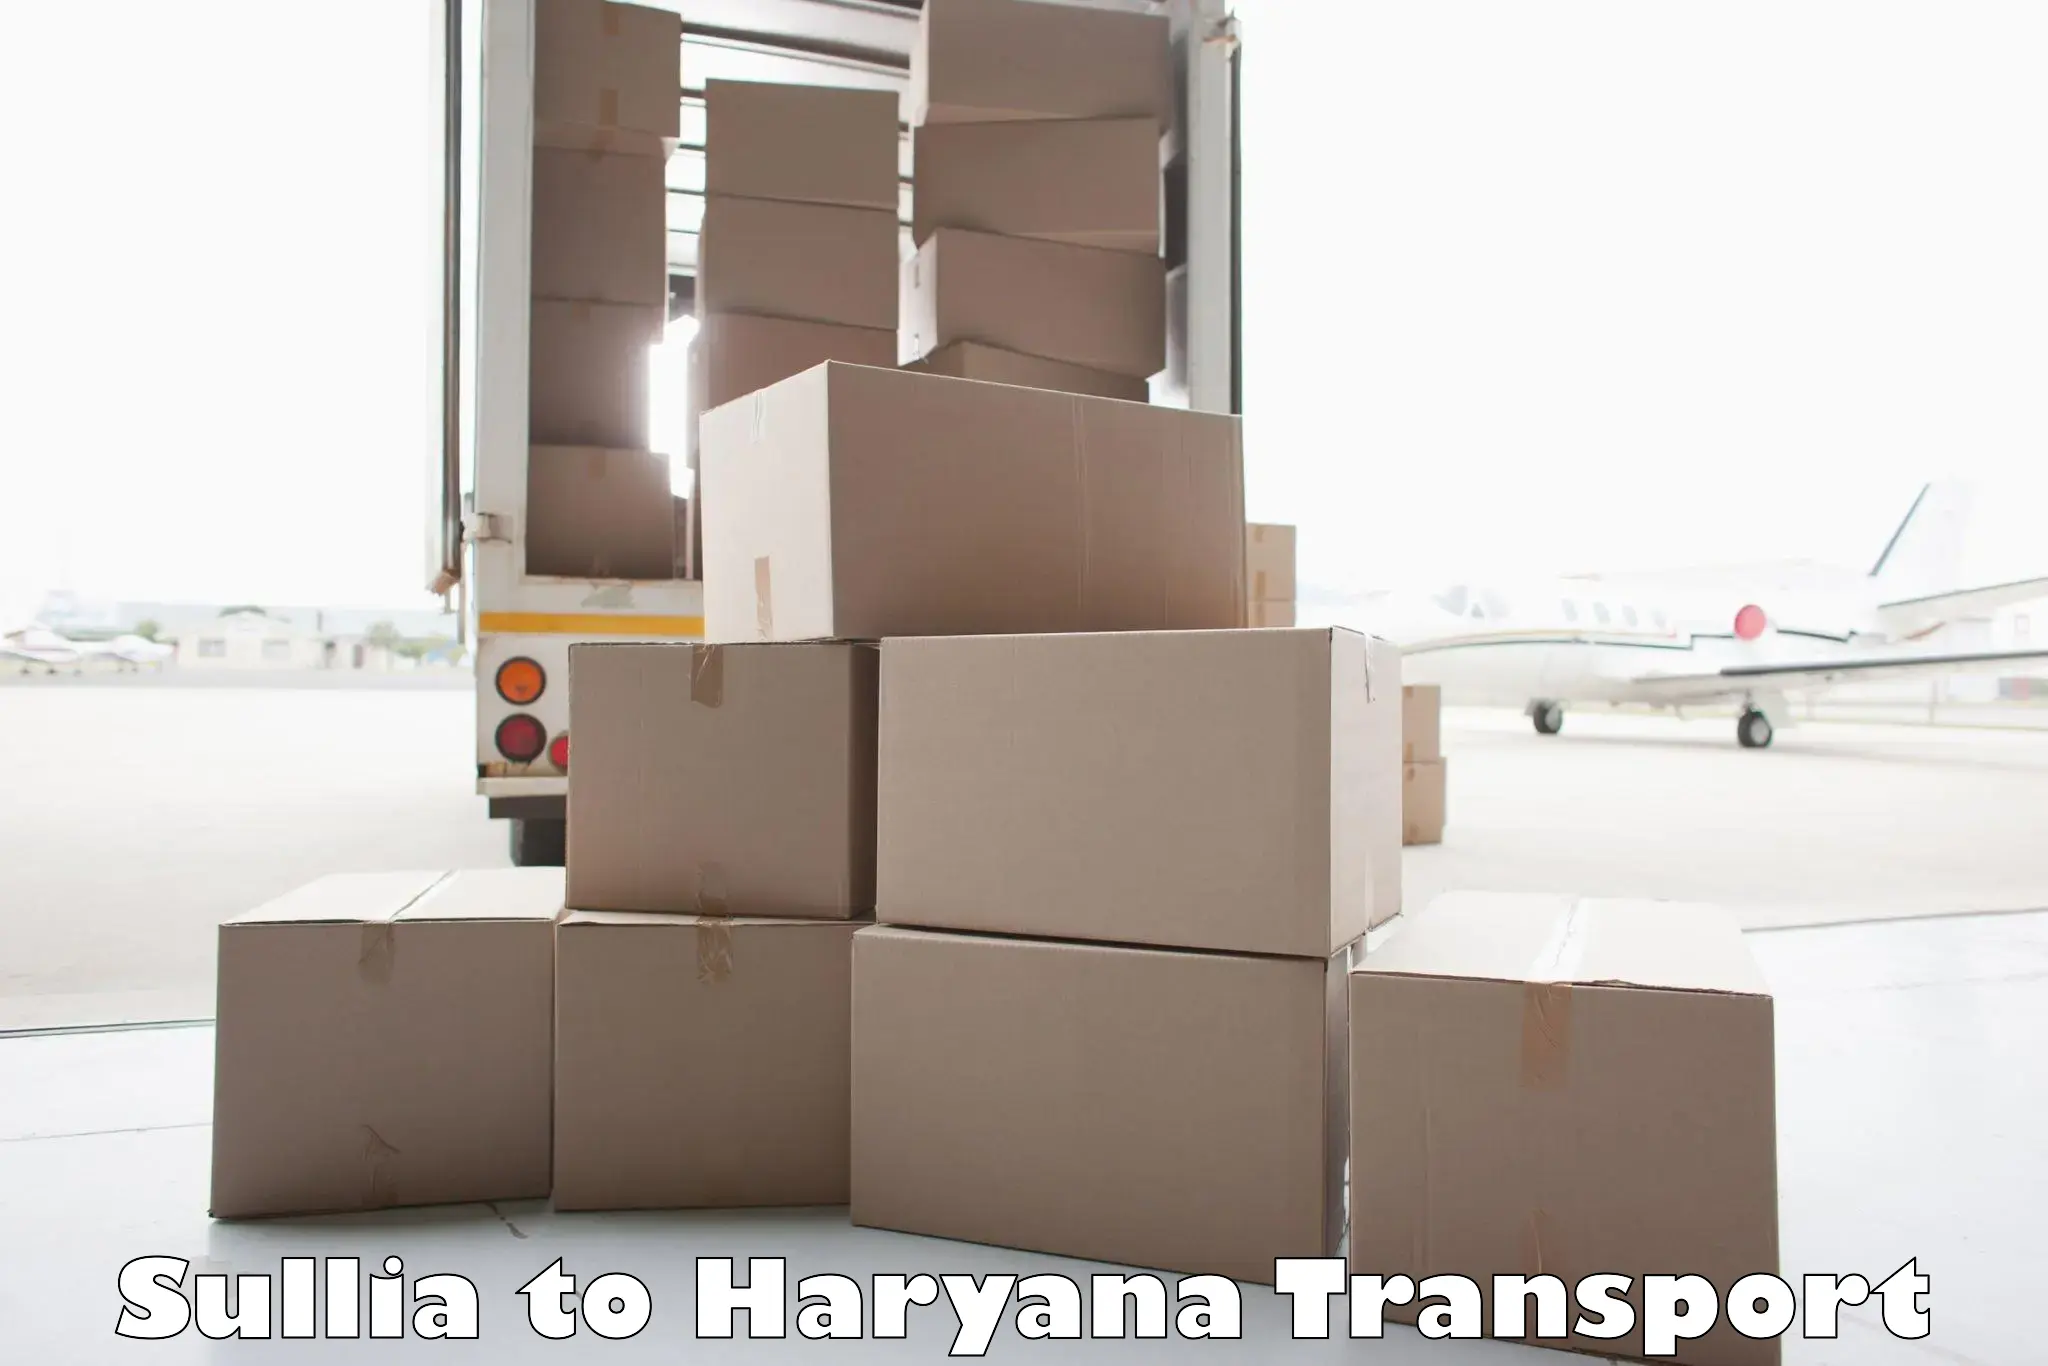 Cycle transportation service Sullia to Haryana